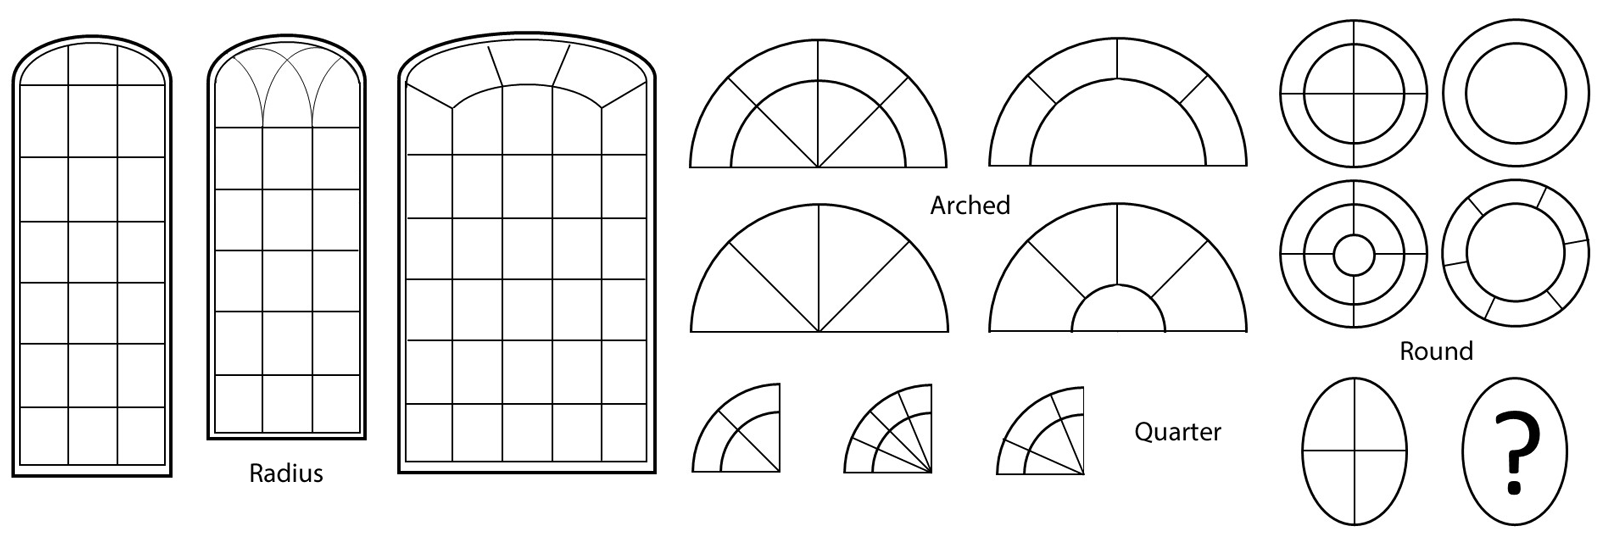 different window grid patterns